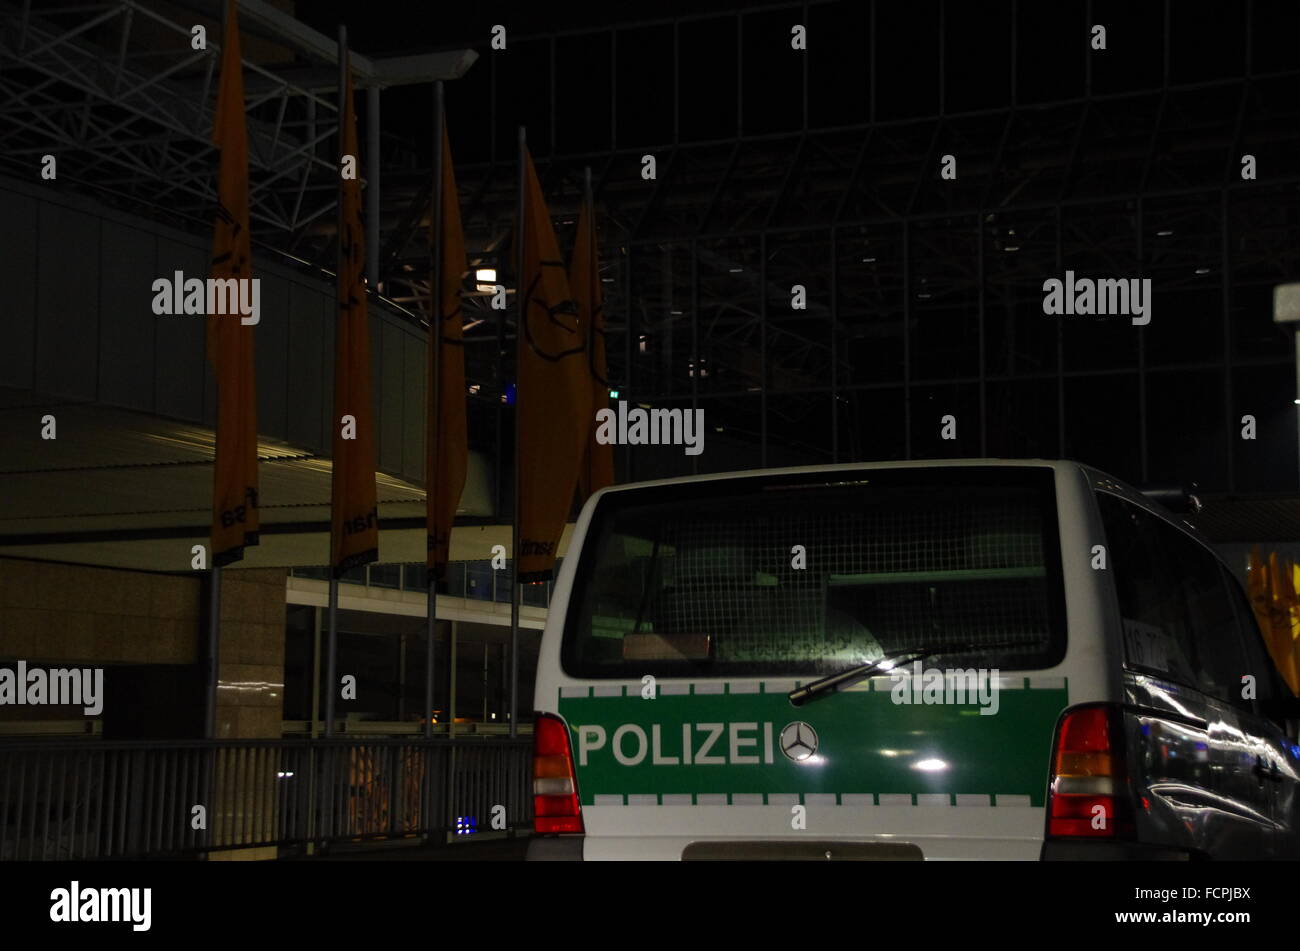 Polizei in Frankfurt Flughafen Stock Photo